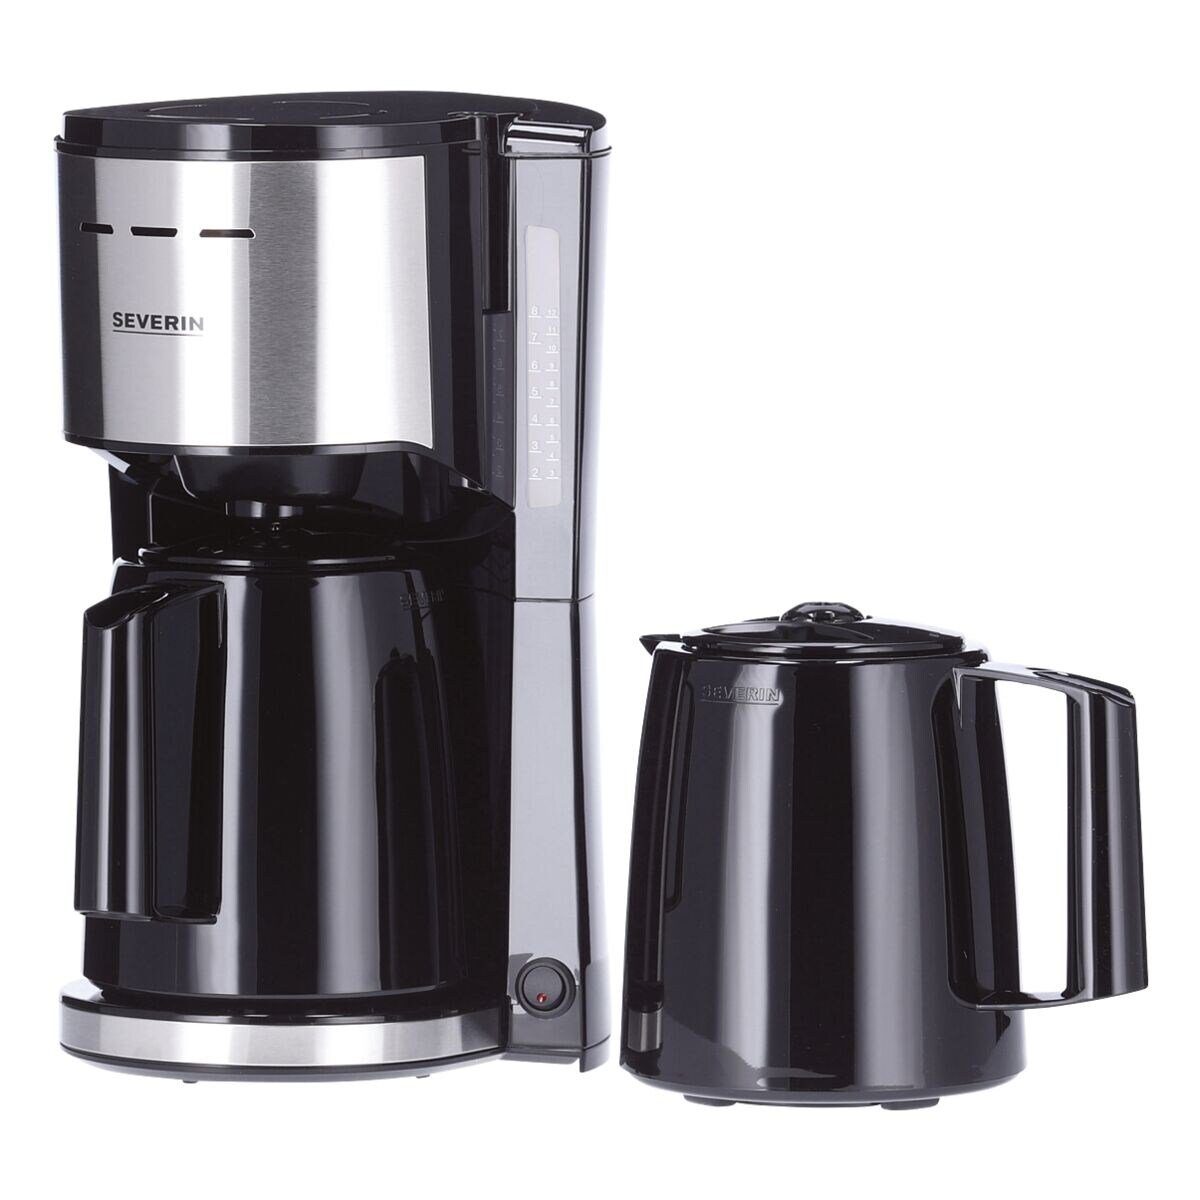 Severin Filterkaffeemaschine / 1000 W 1x4, KA silberfarben schwarz 2 1l 9308, Kaffeekanne, inkl. Thermokannen